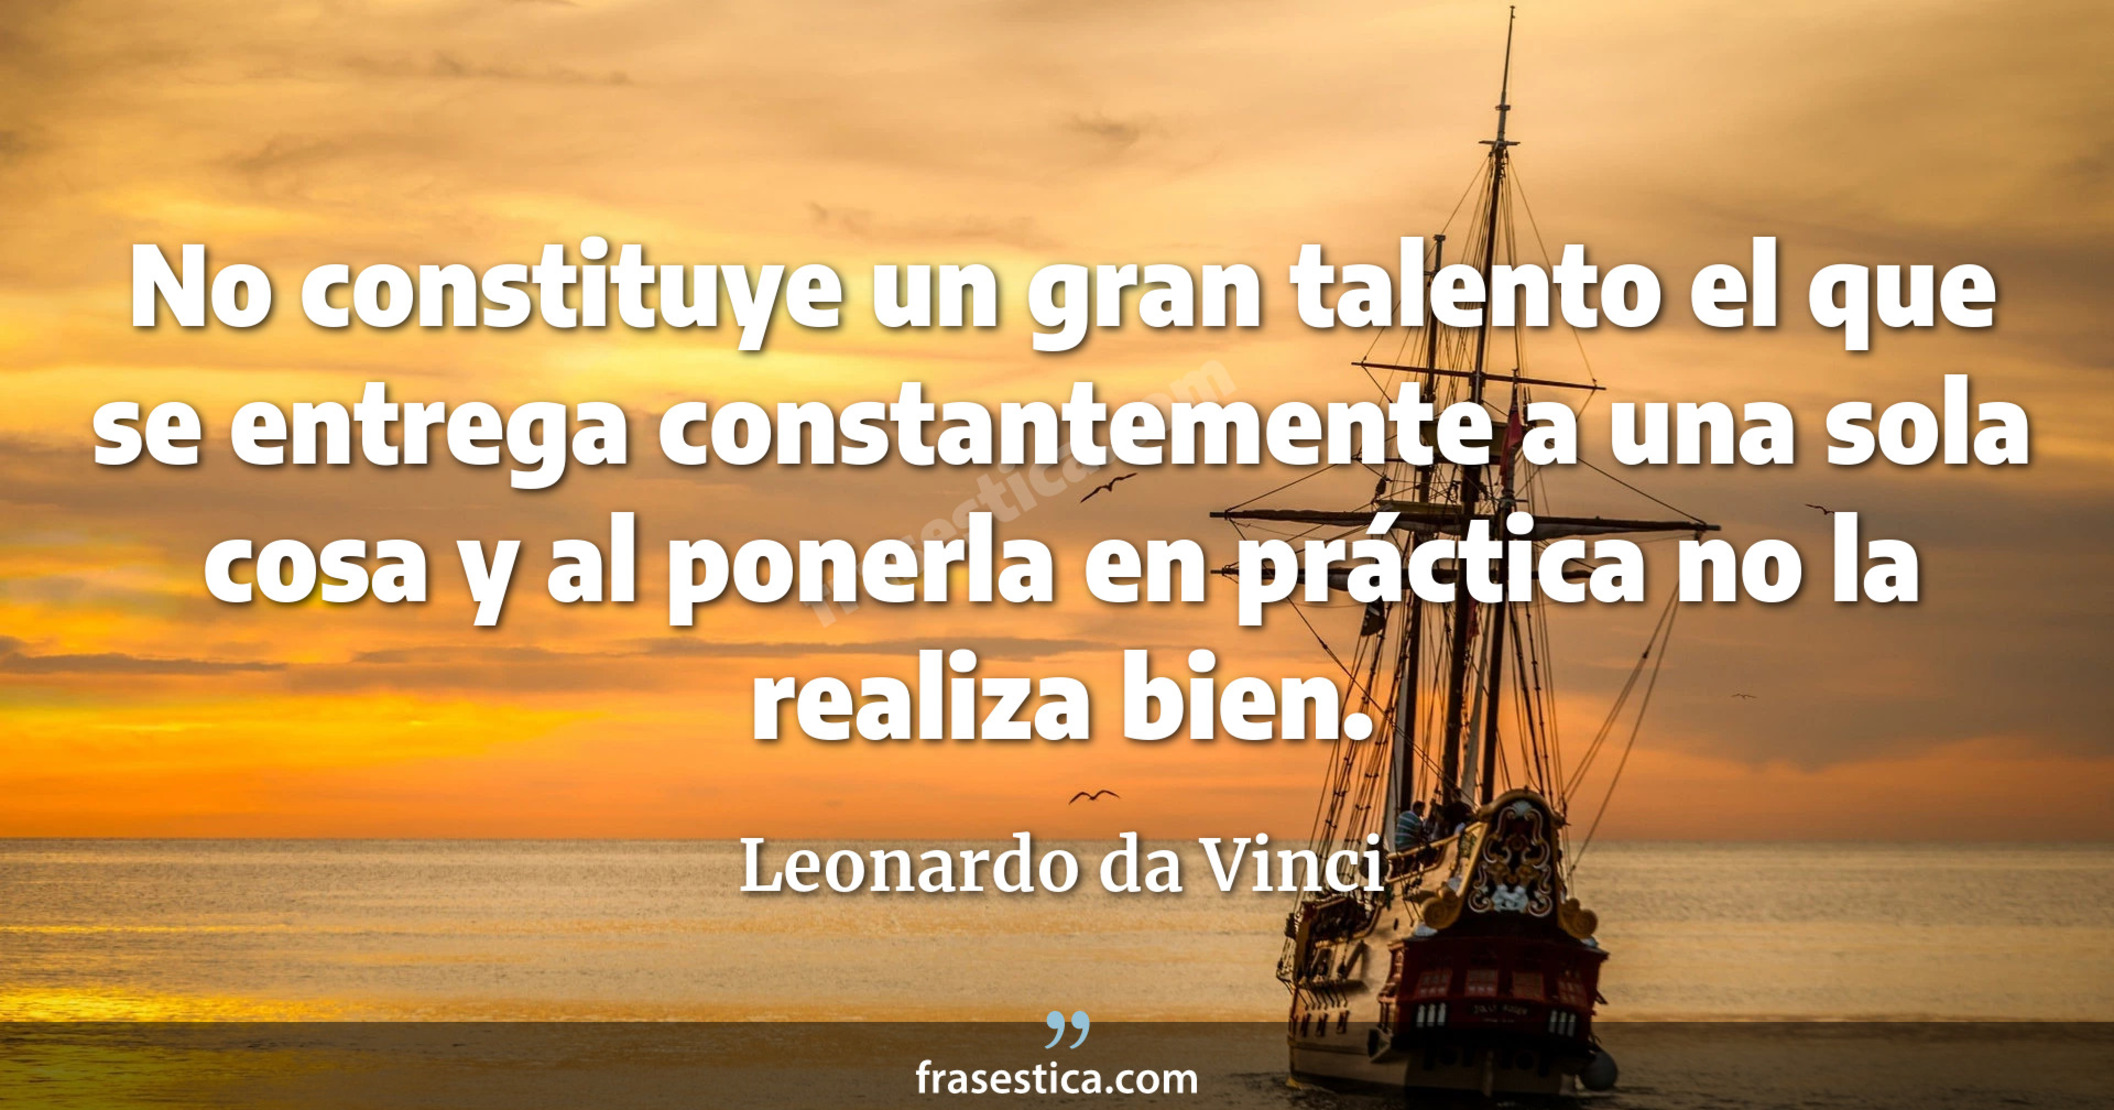 No constituye un gran talento el que se entrega constantemente a una sola cosa y al ponerla en práctica no la realiza bien. - Leonardo da Vinci